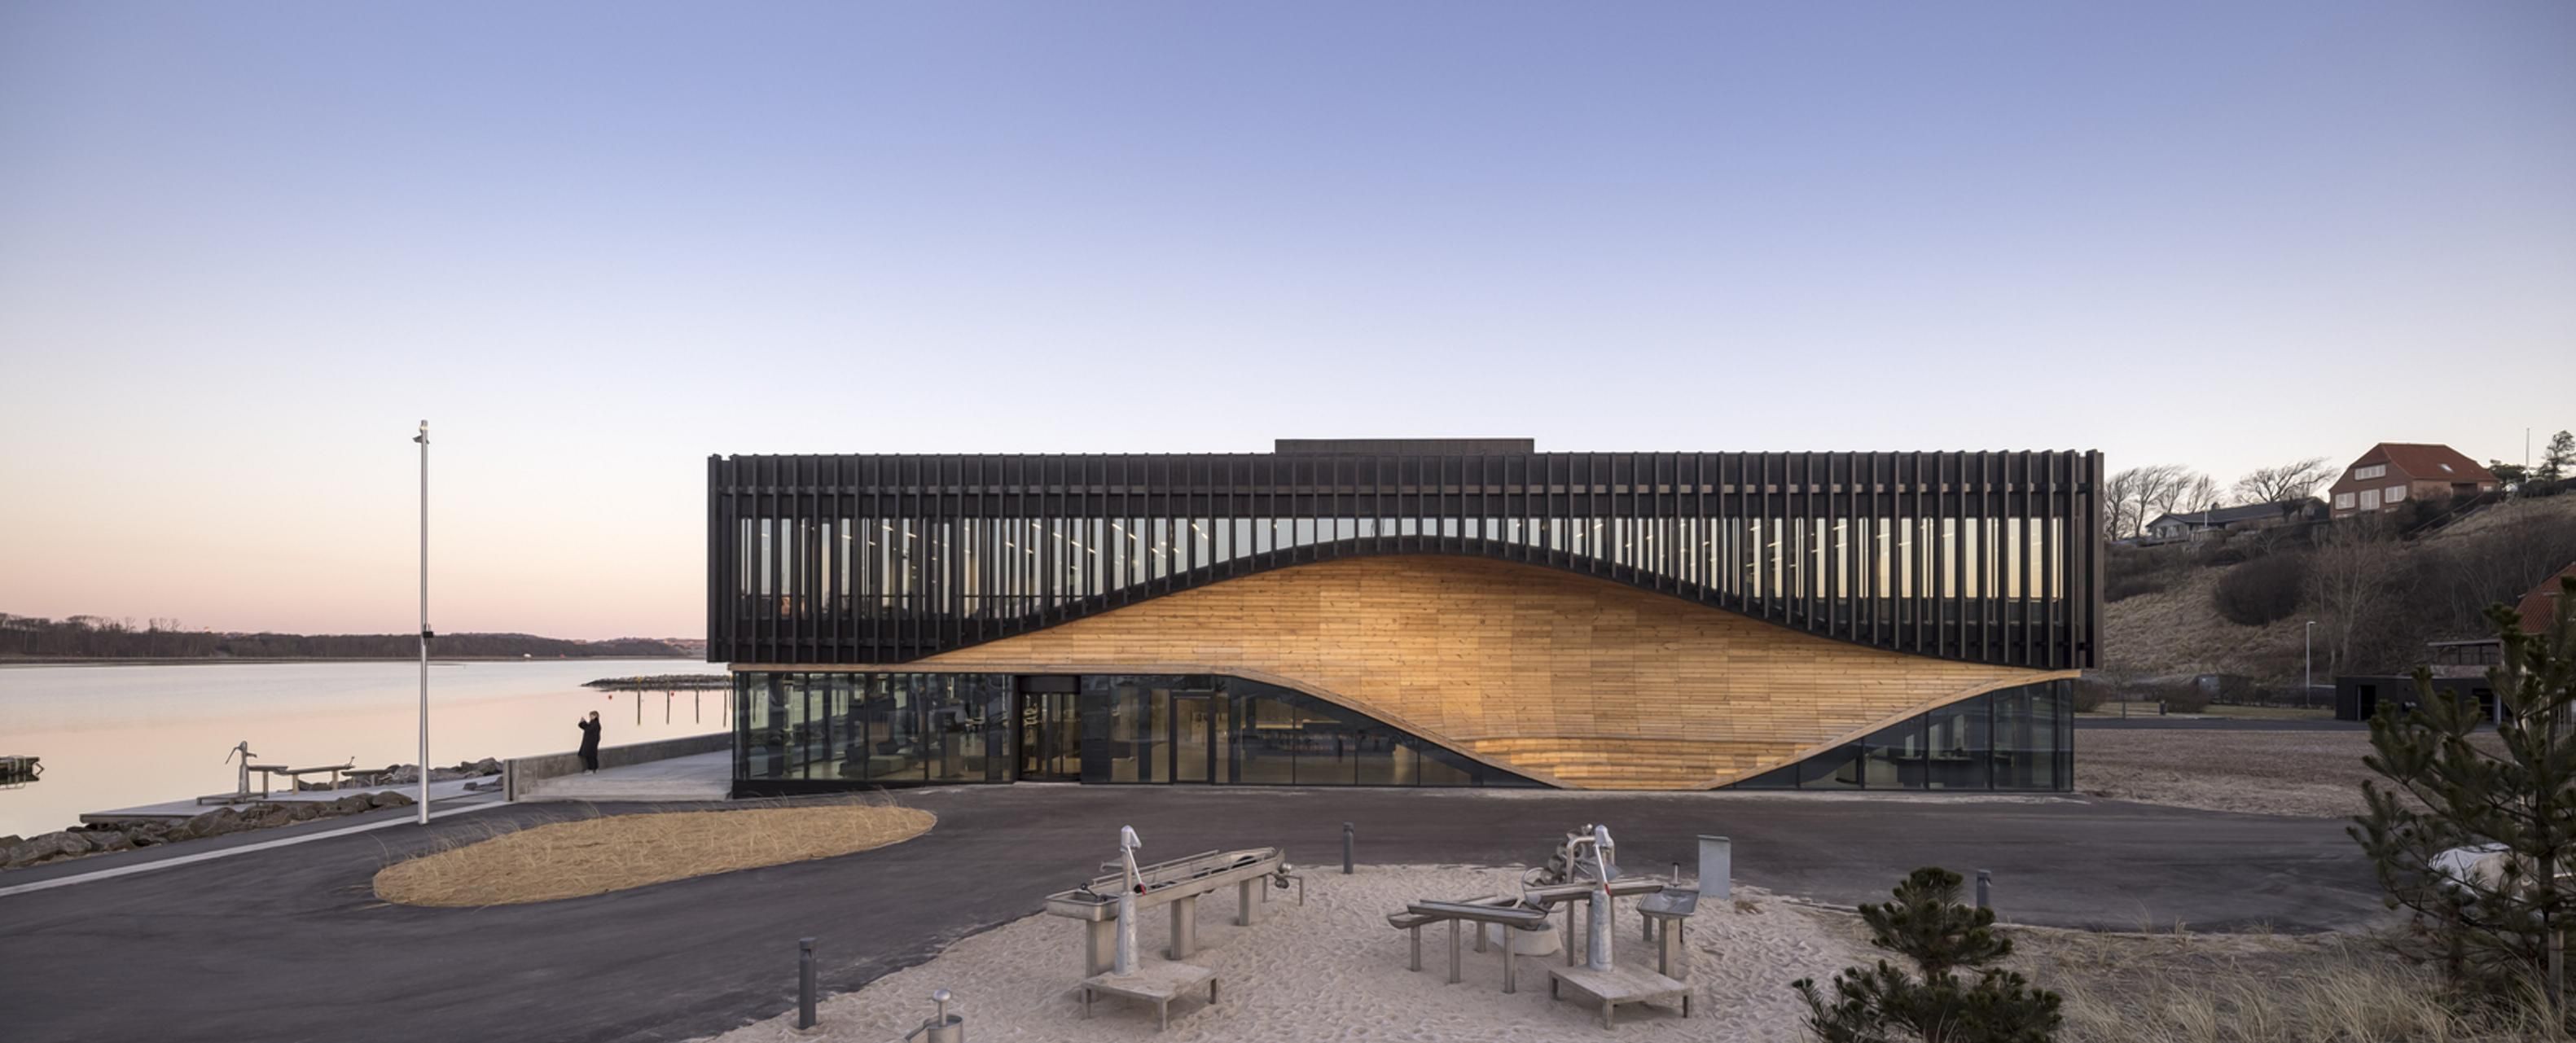 Положительные изменения: невероятный дизайн климатического центра в Дании 